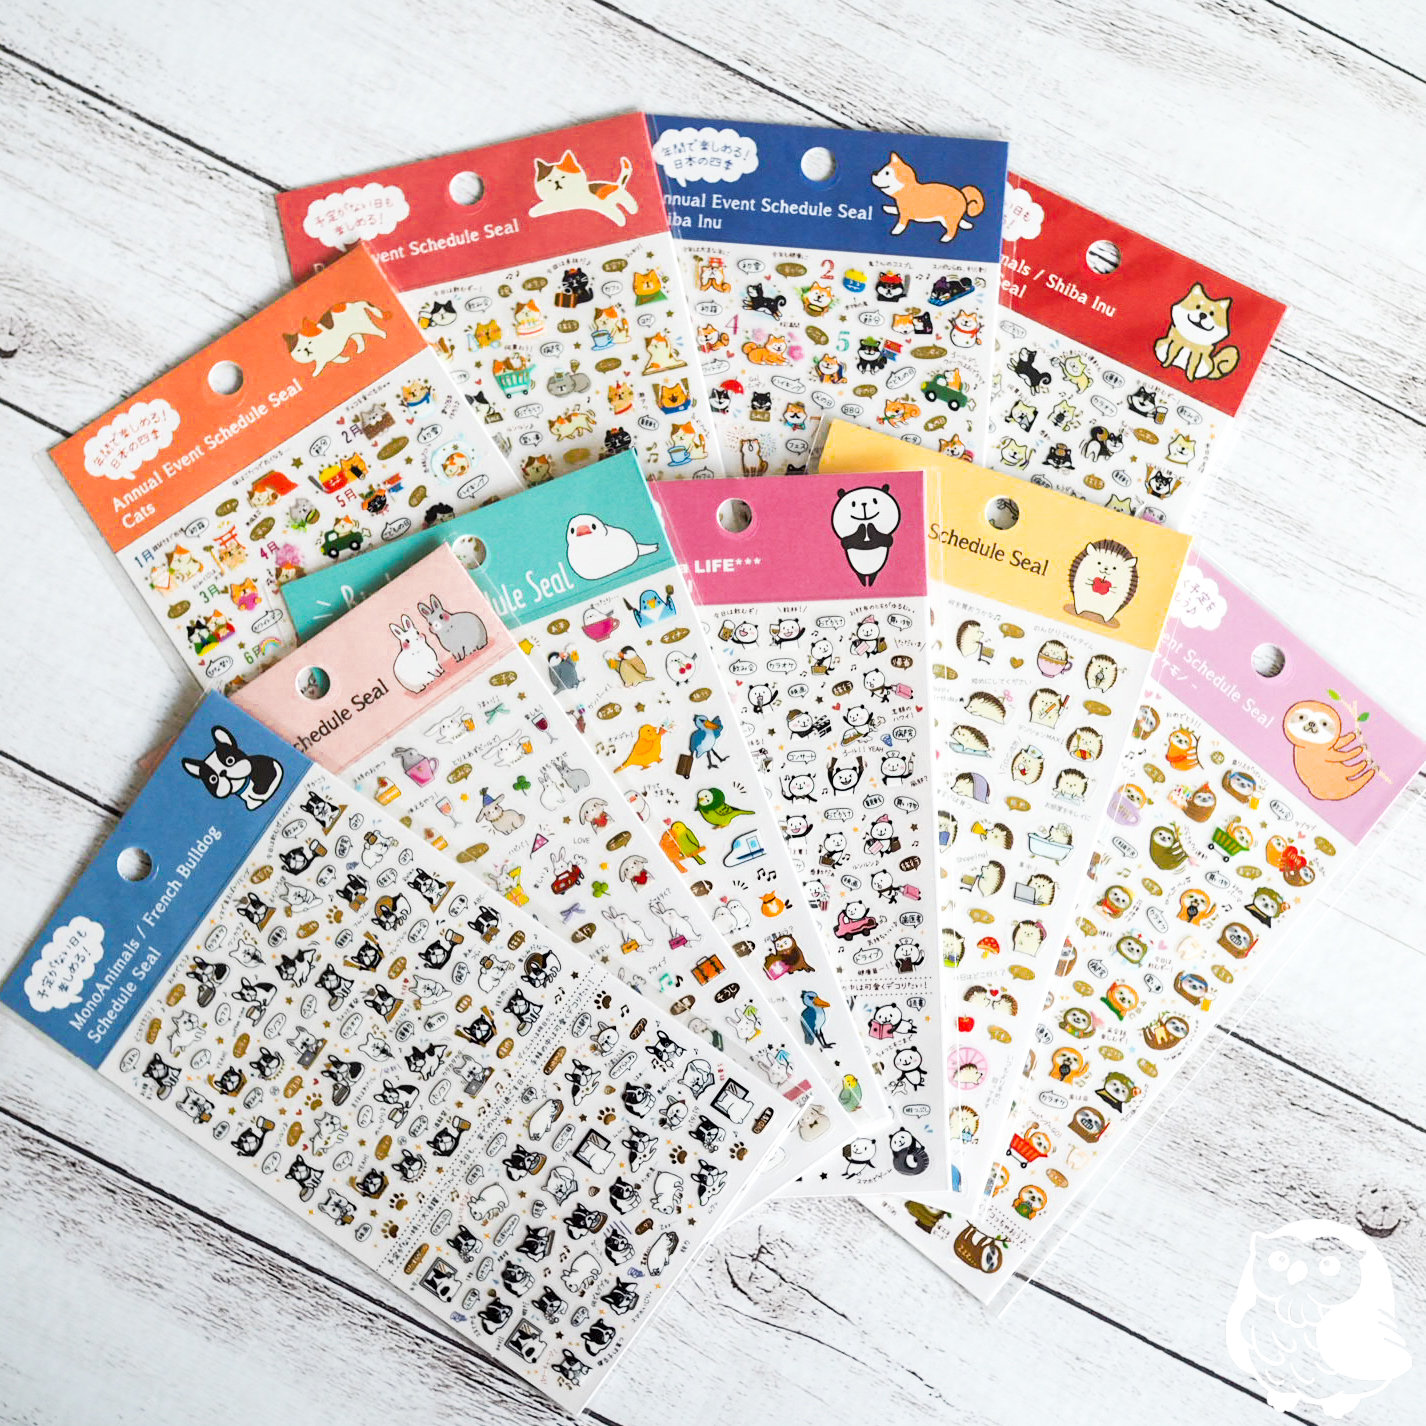 Lot de papier à lettre + enveloppes + stickers - Lama - Midori